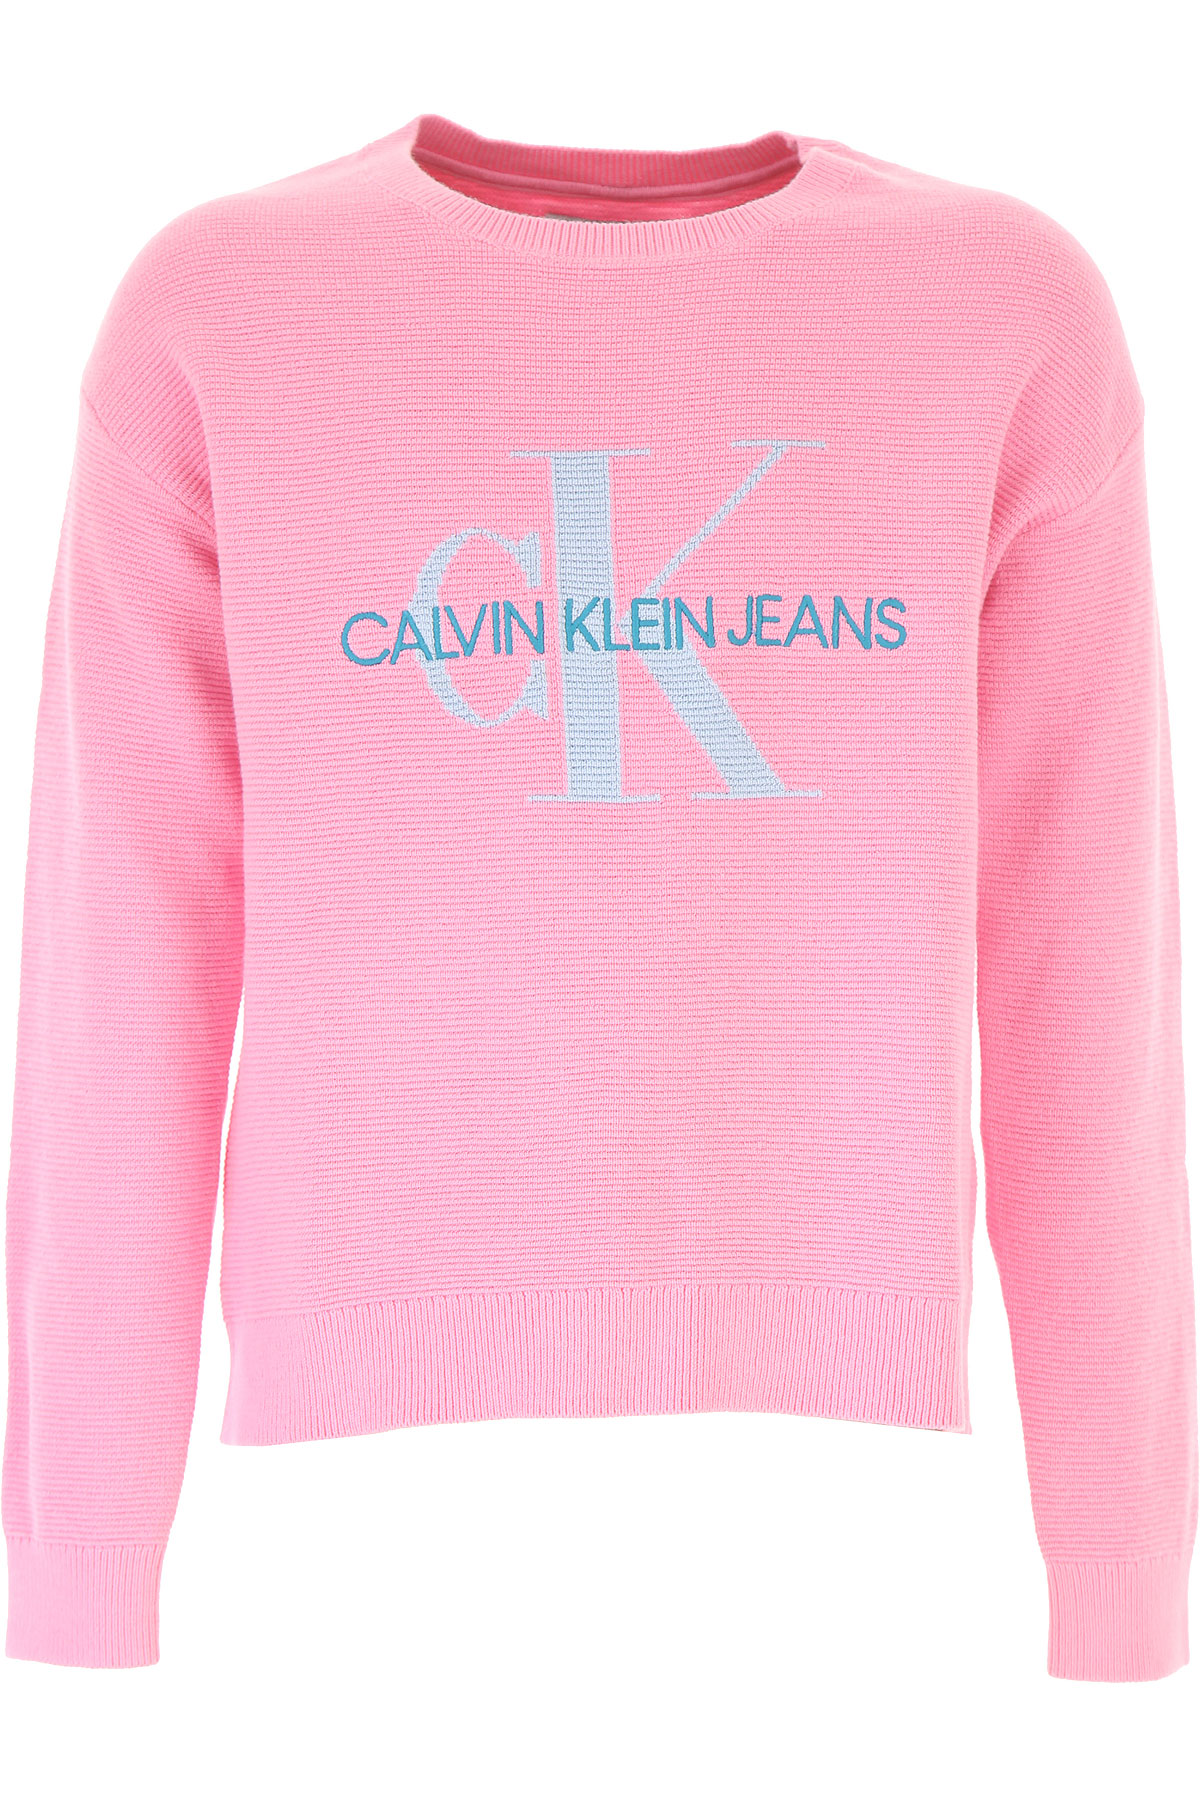 Calvin Klein Kinder Pullover für Mädchen Günstig im Sale, Pink, Baumwolle, 2017, 12Y 14Y 16Y 8Y